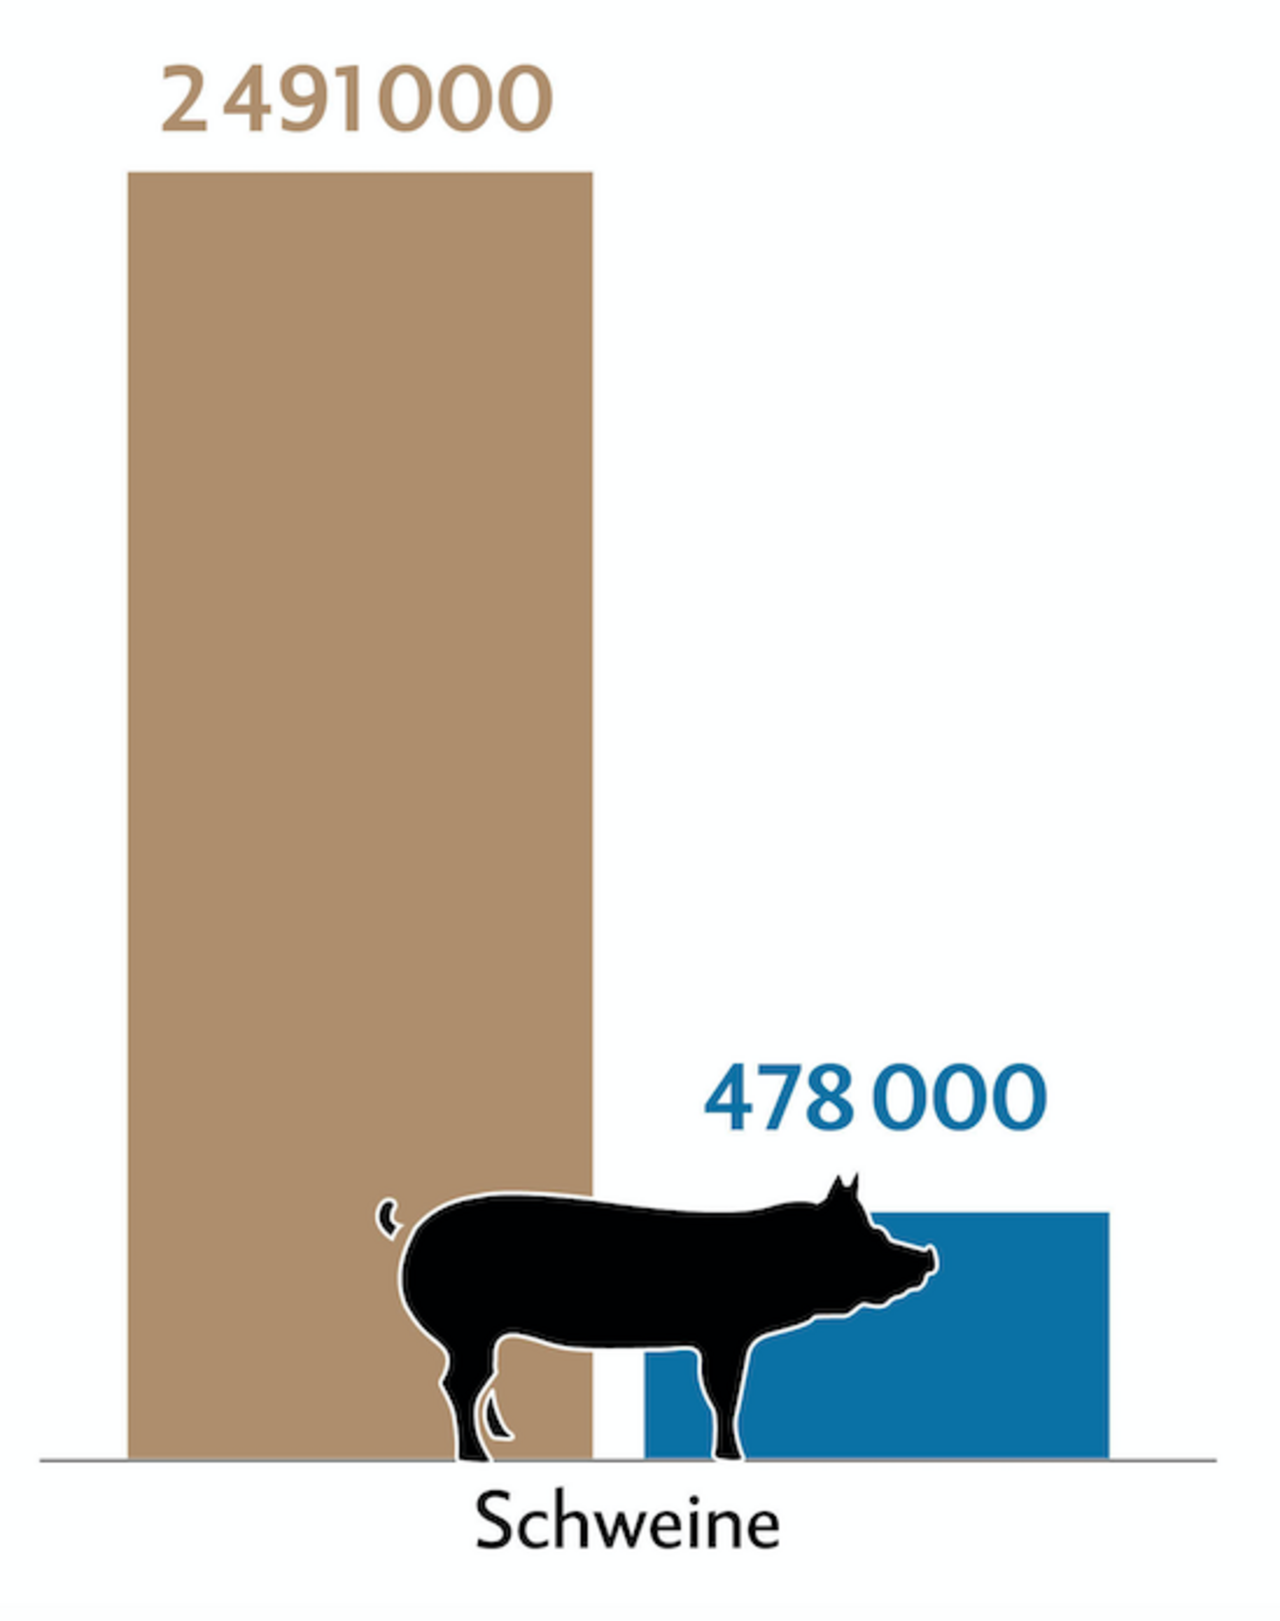 Balkendiagramm zeigt die Tierzahlen (braun) und Behandlungszahlen (blau) der Schweine in der Schweiz.